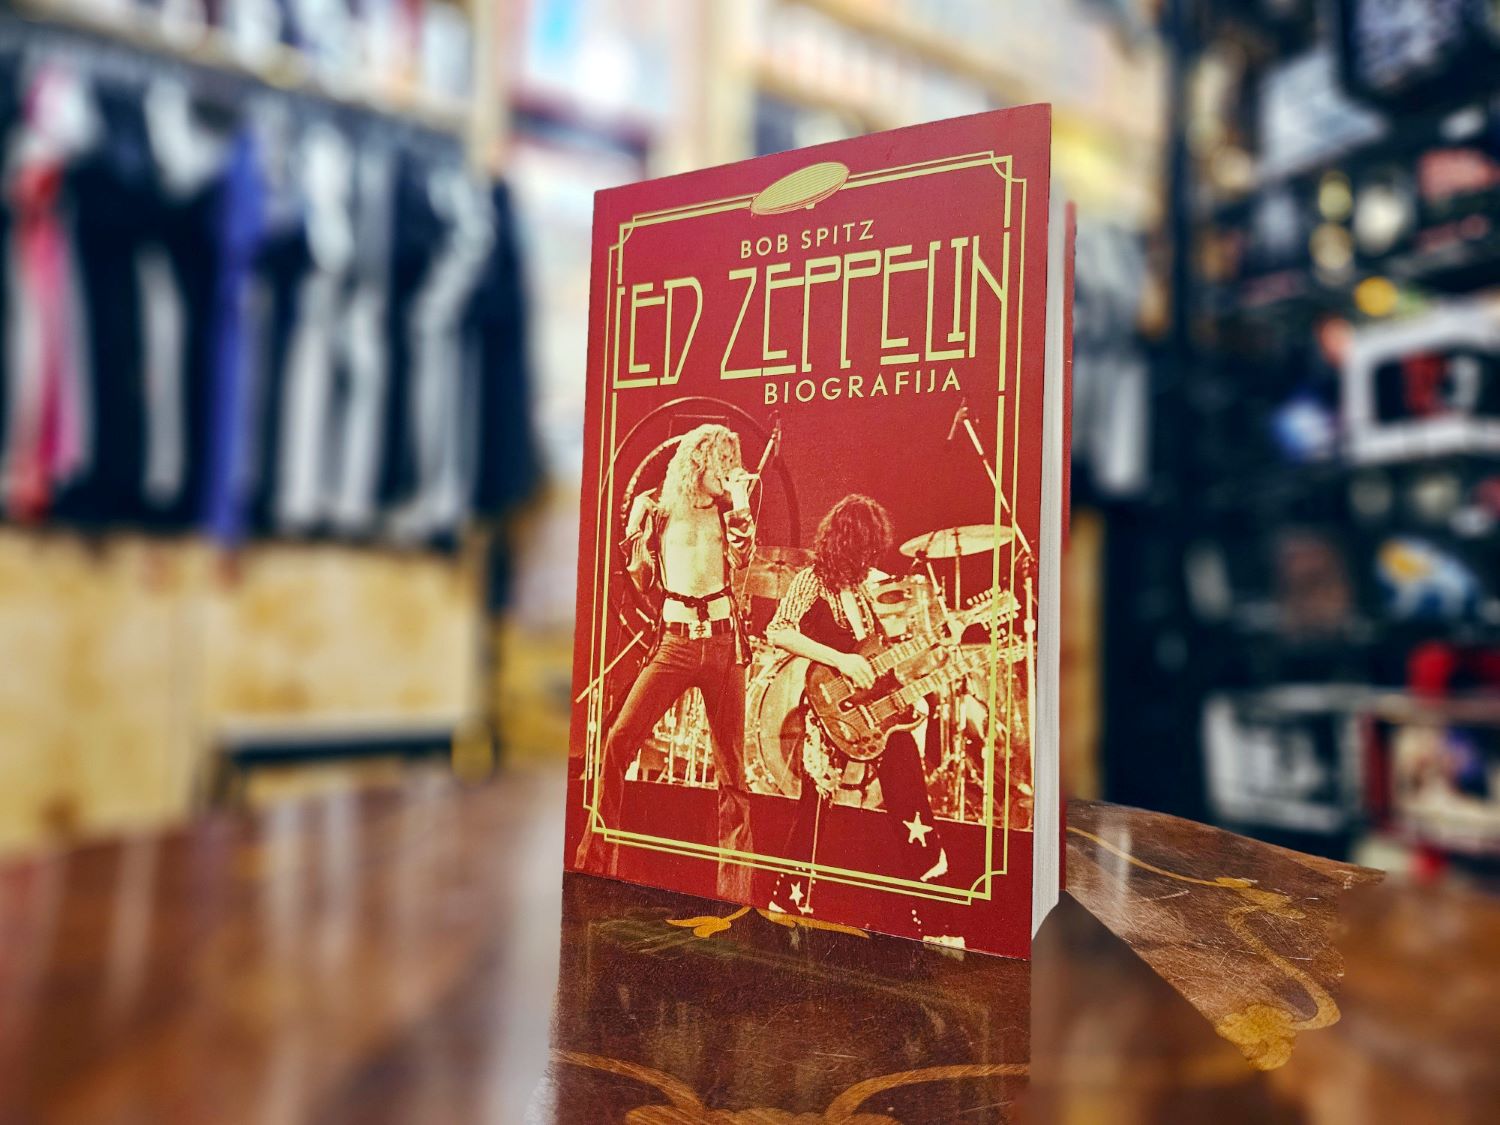 Led Zeppelin biografija